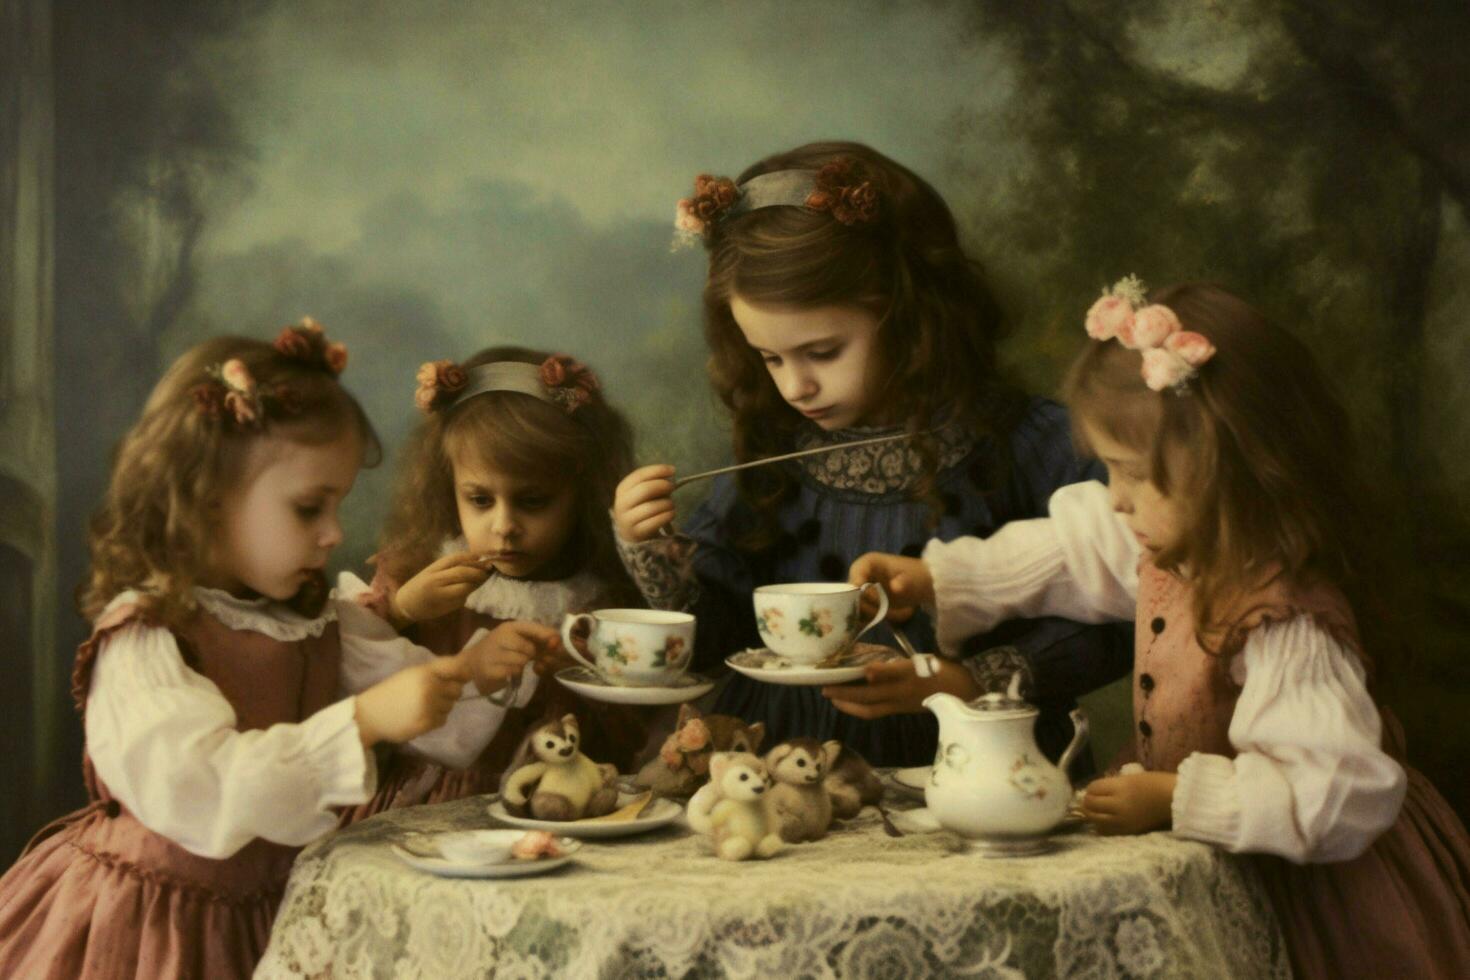 les enfants ayant une thé fête photo